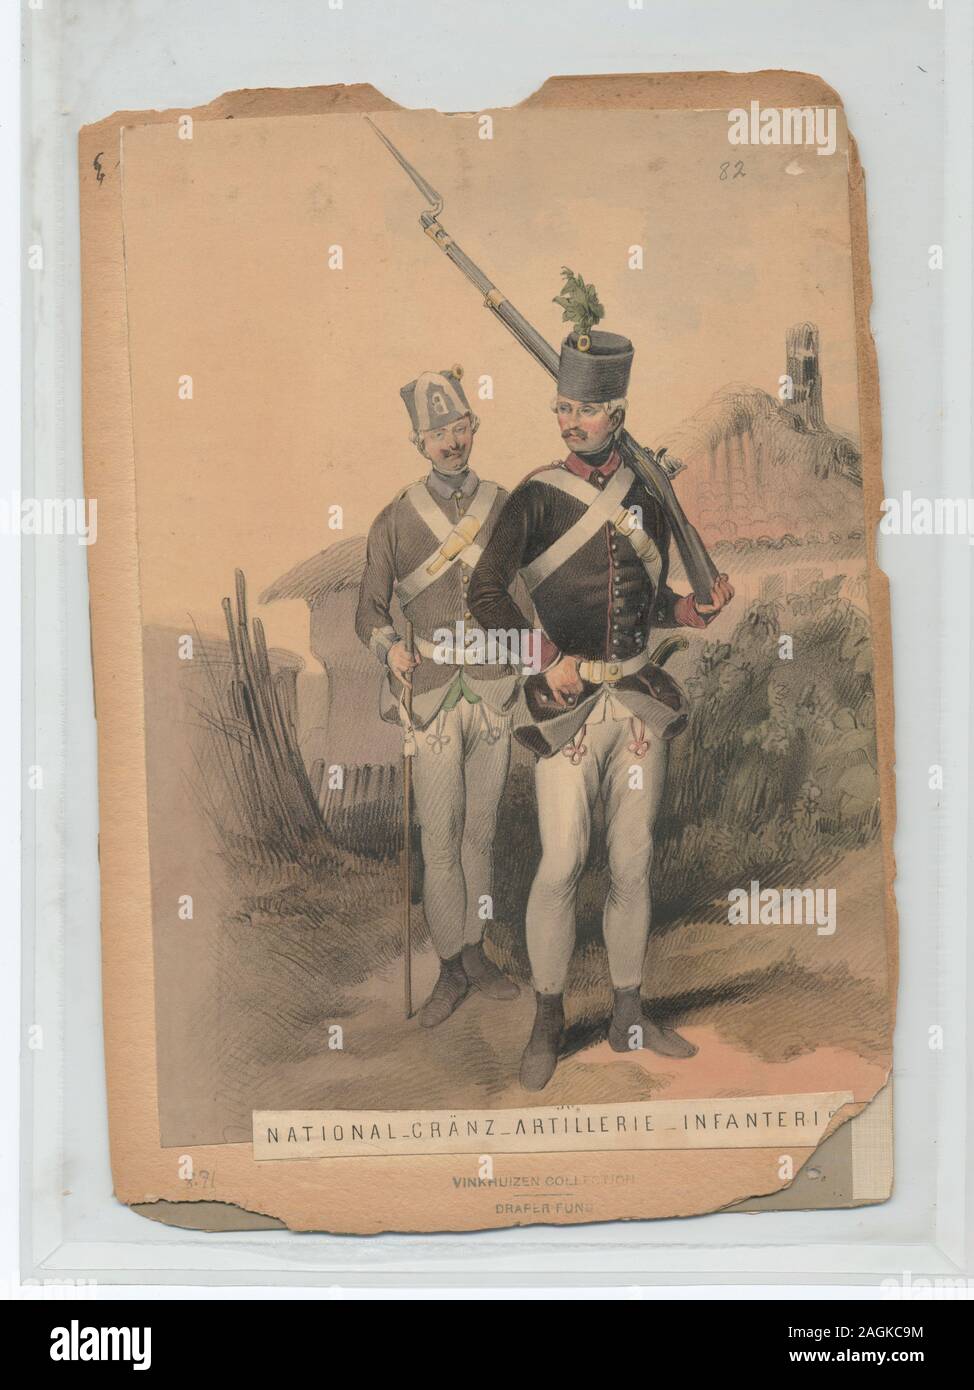 Proprietà : Il fondo a pettine Greuz 8.71, o la frontiera di fanteria e di artiglieria, 1784 (Gerasch); National-Gränz-Artillerie -Infanterist. Foto Stock